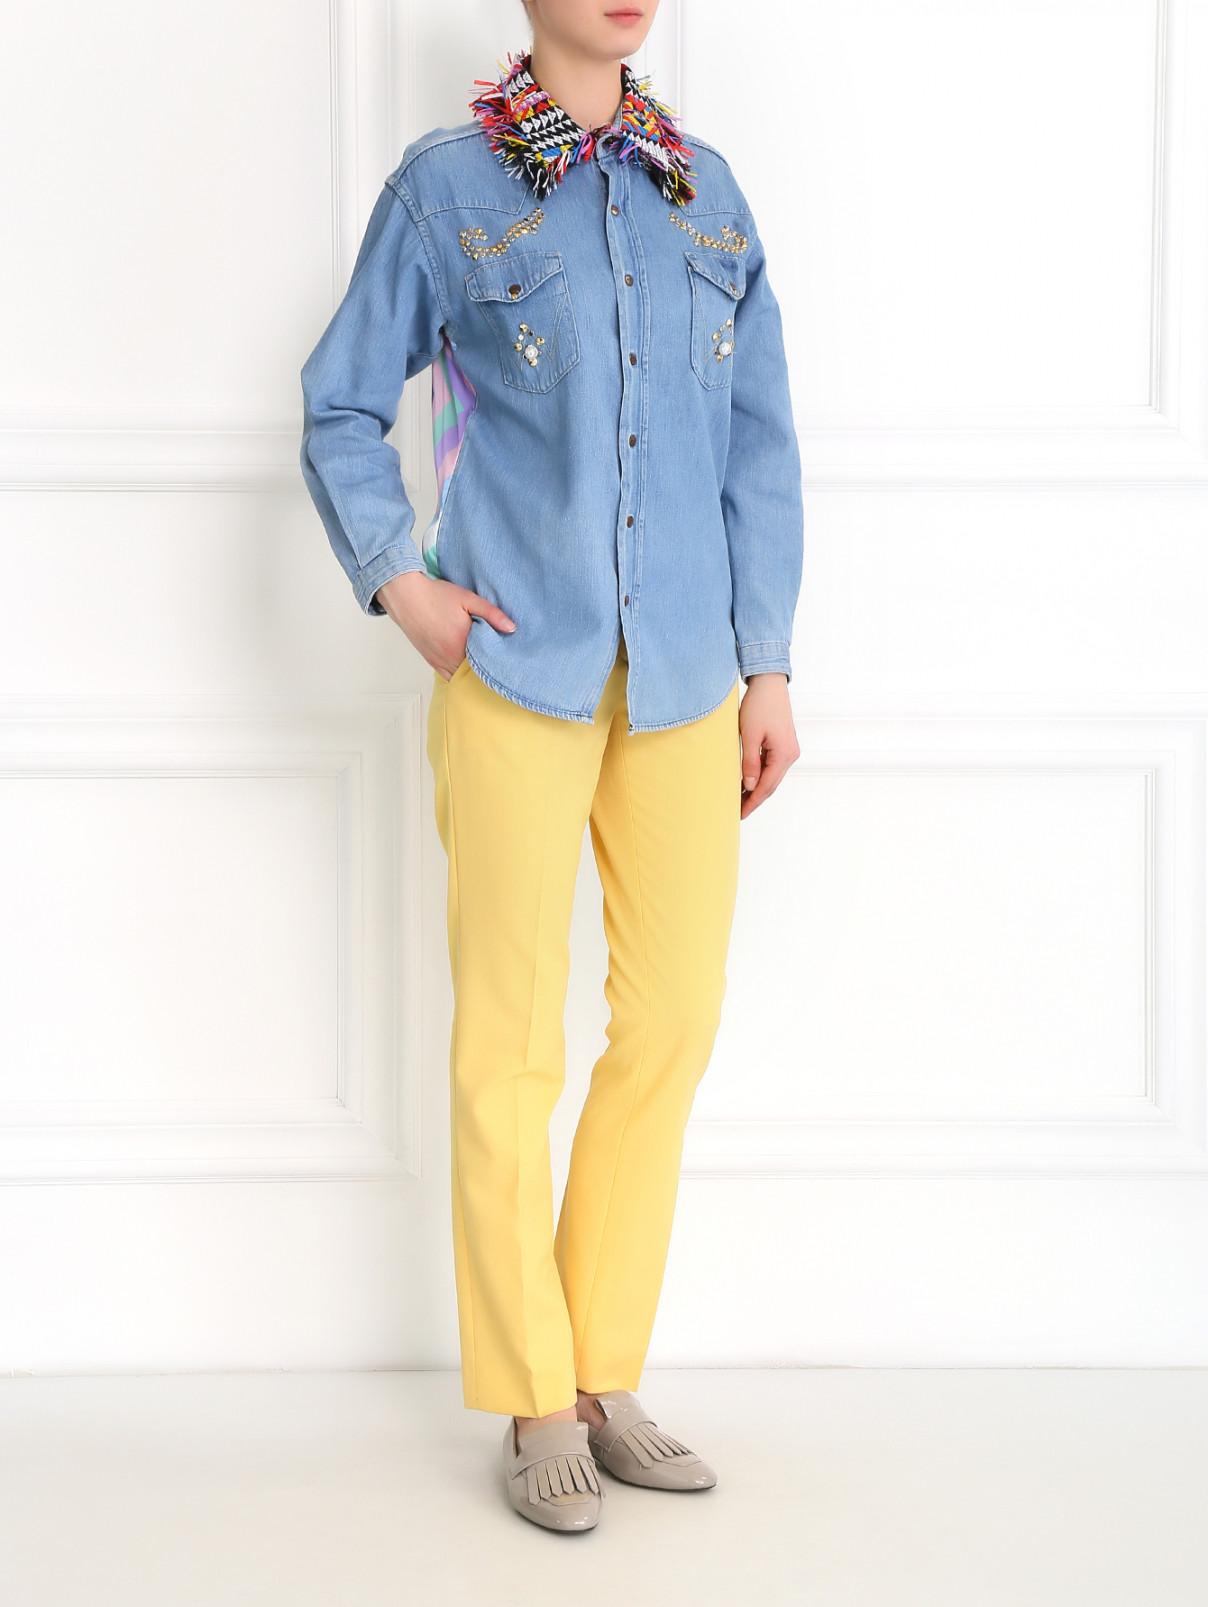 Блуза из денима и шелка с аппликацией Forte Dei Marmi Couture  –  Модель Общий вид  – Цвет:  Синий